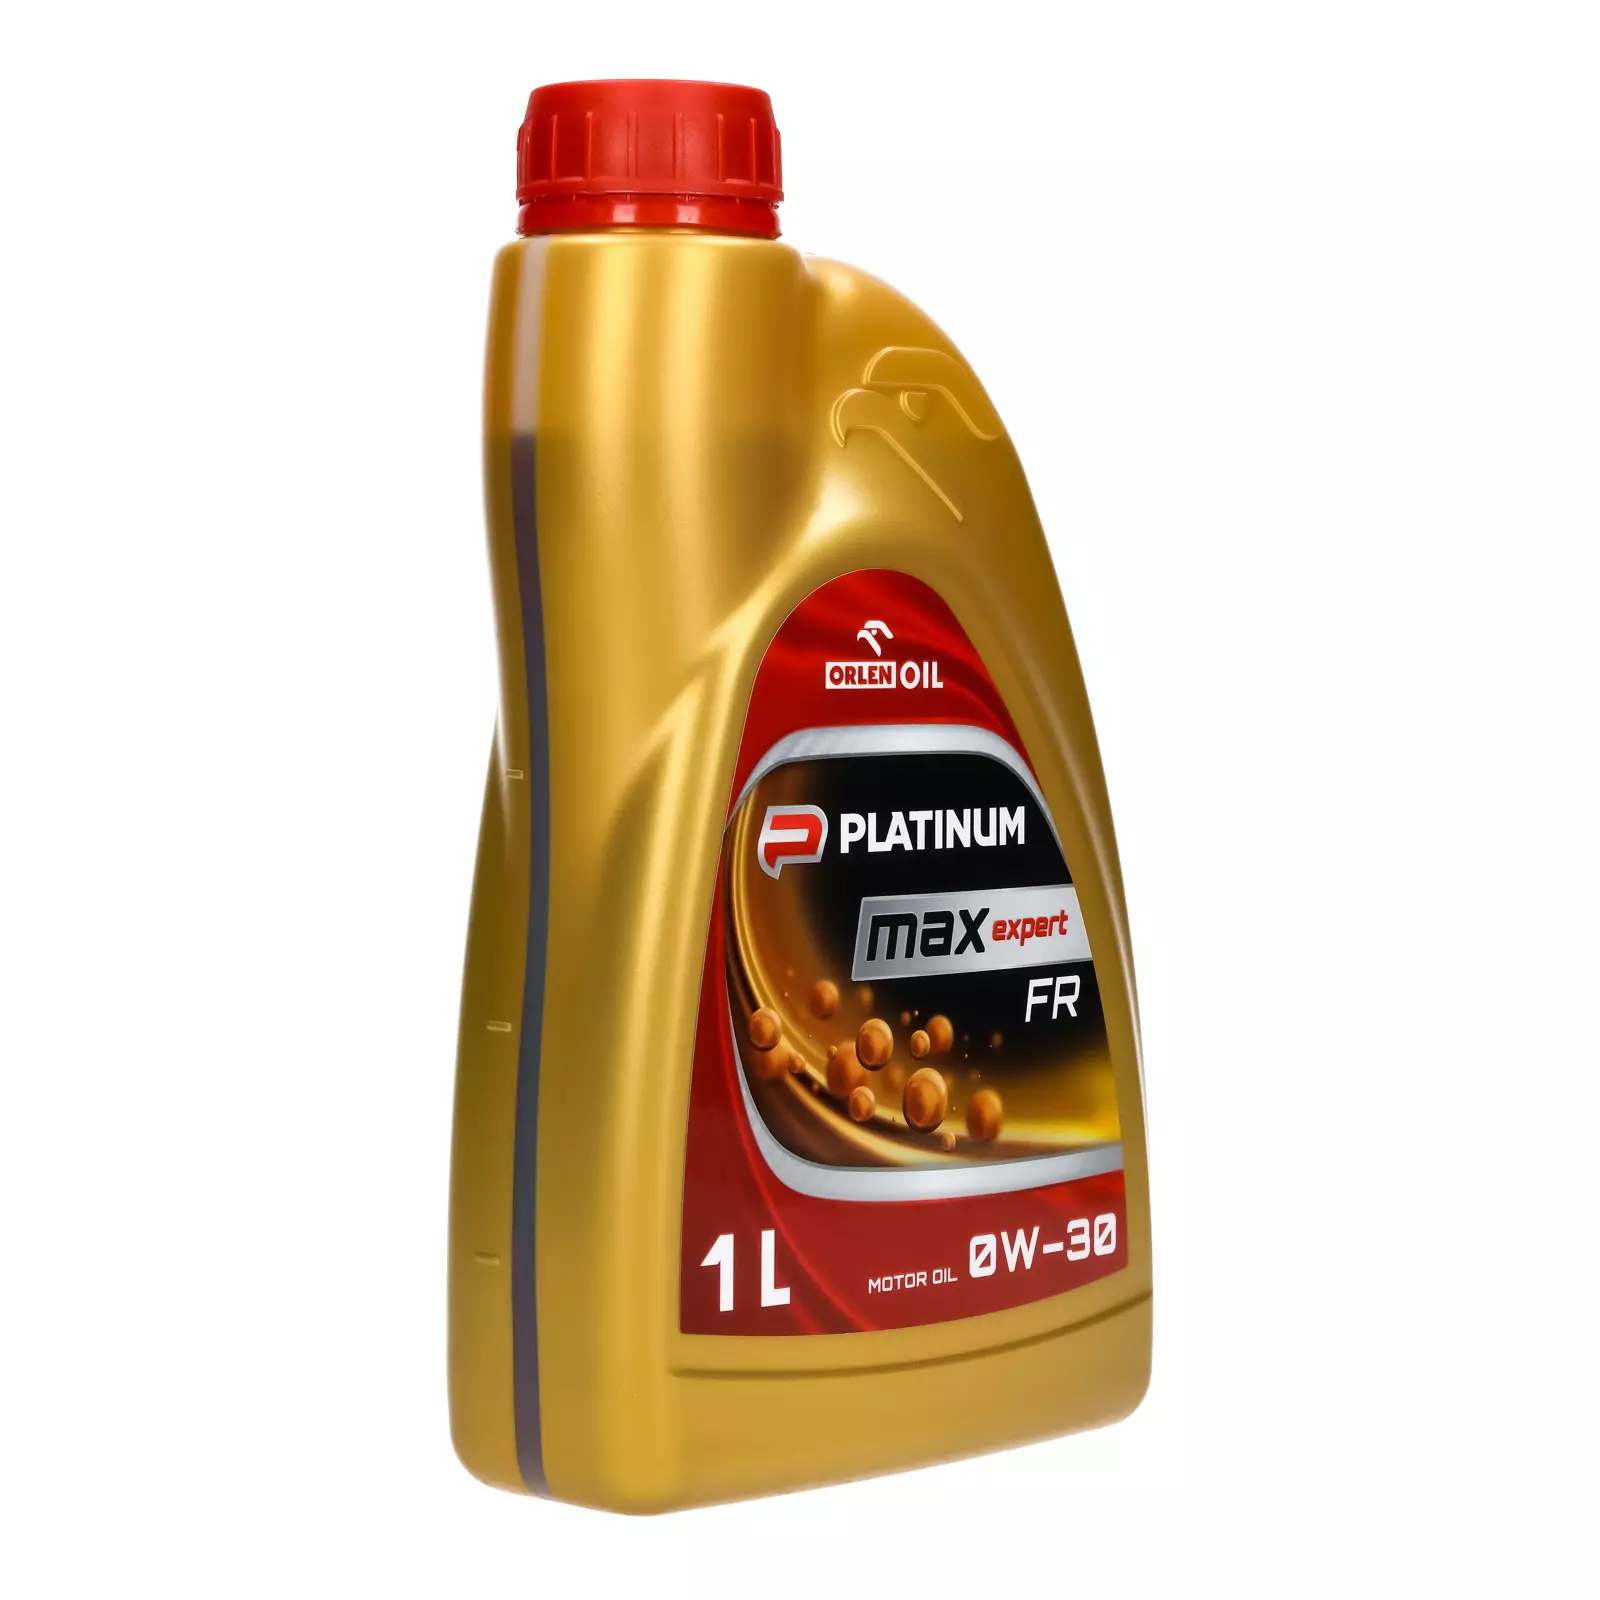 Orlen PLATINUM Max Expert FR 0W-30​​ 1л моторное масло